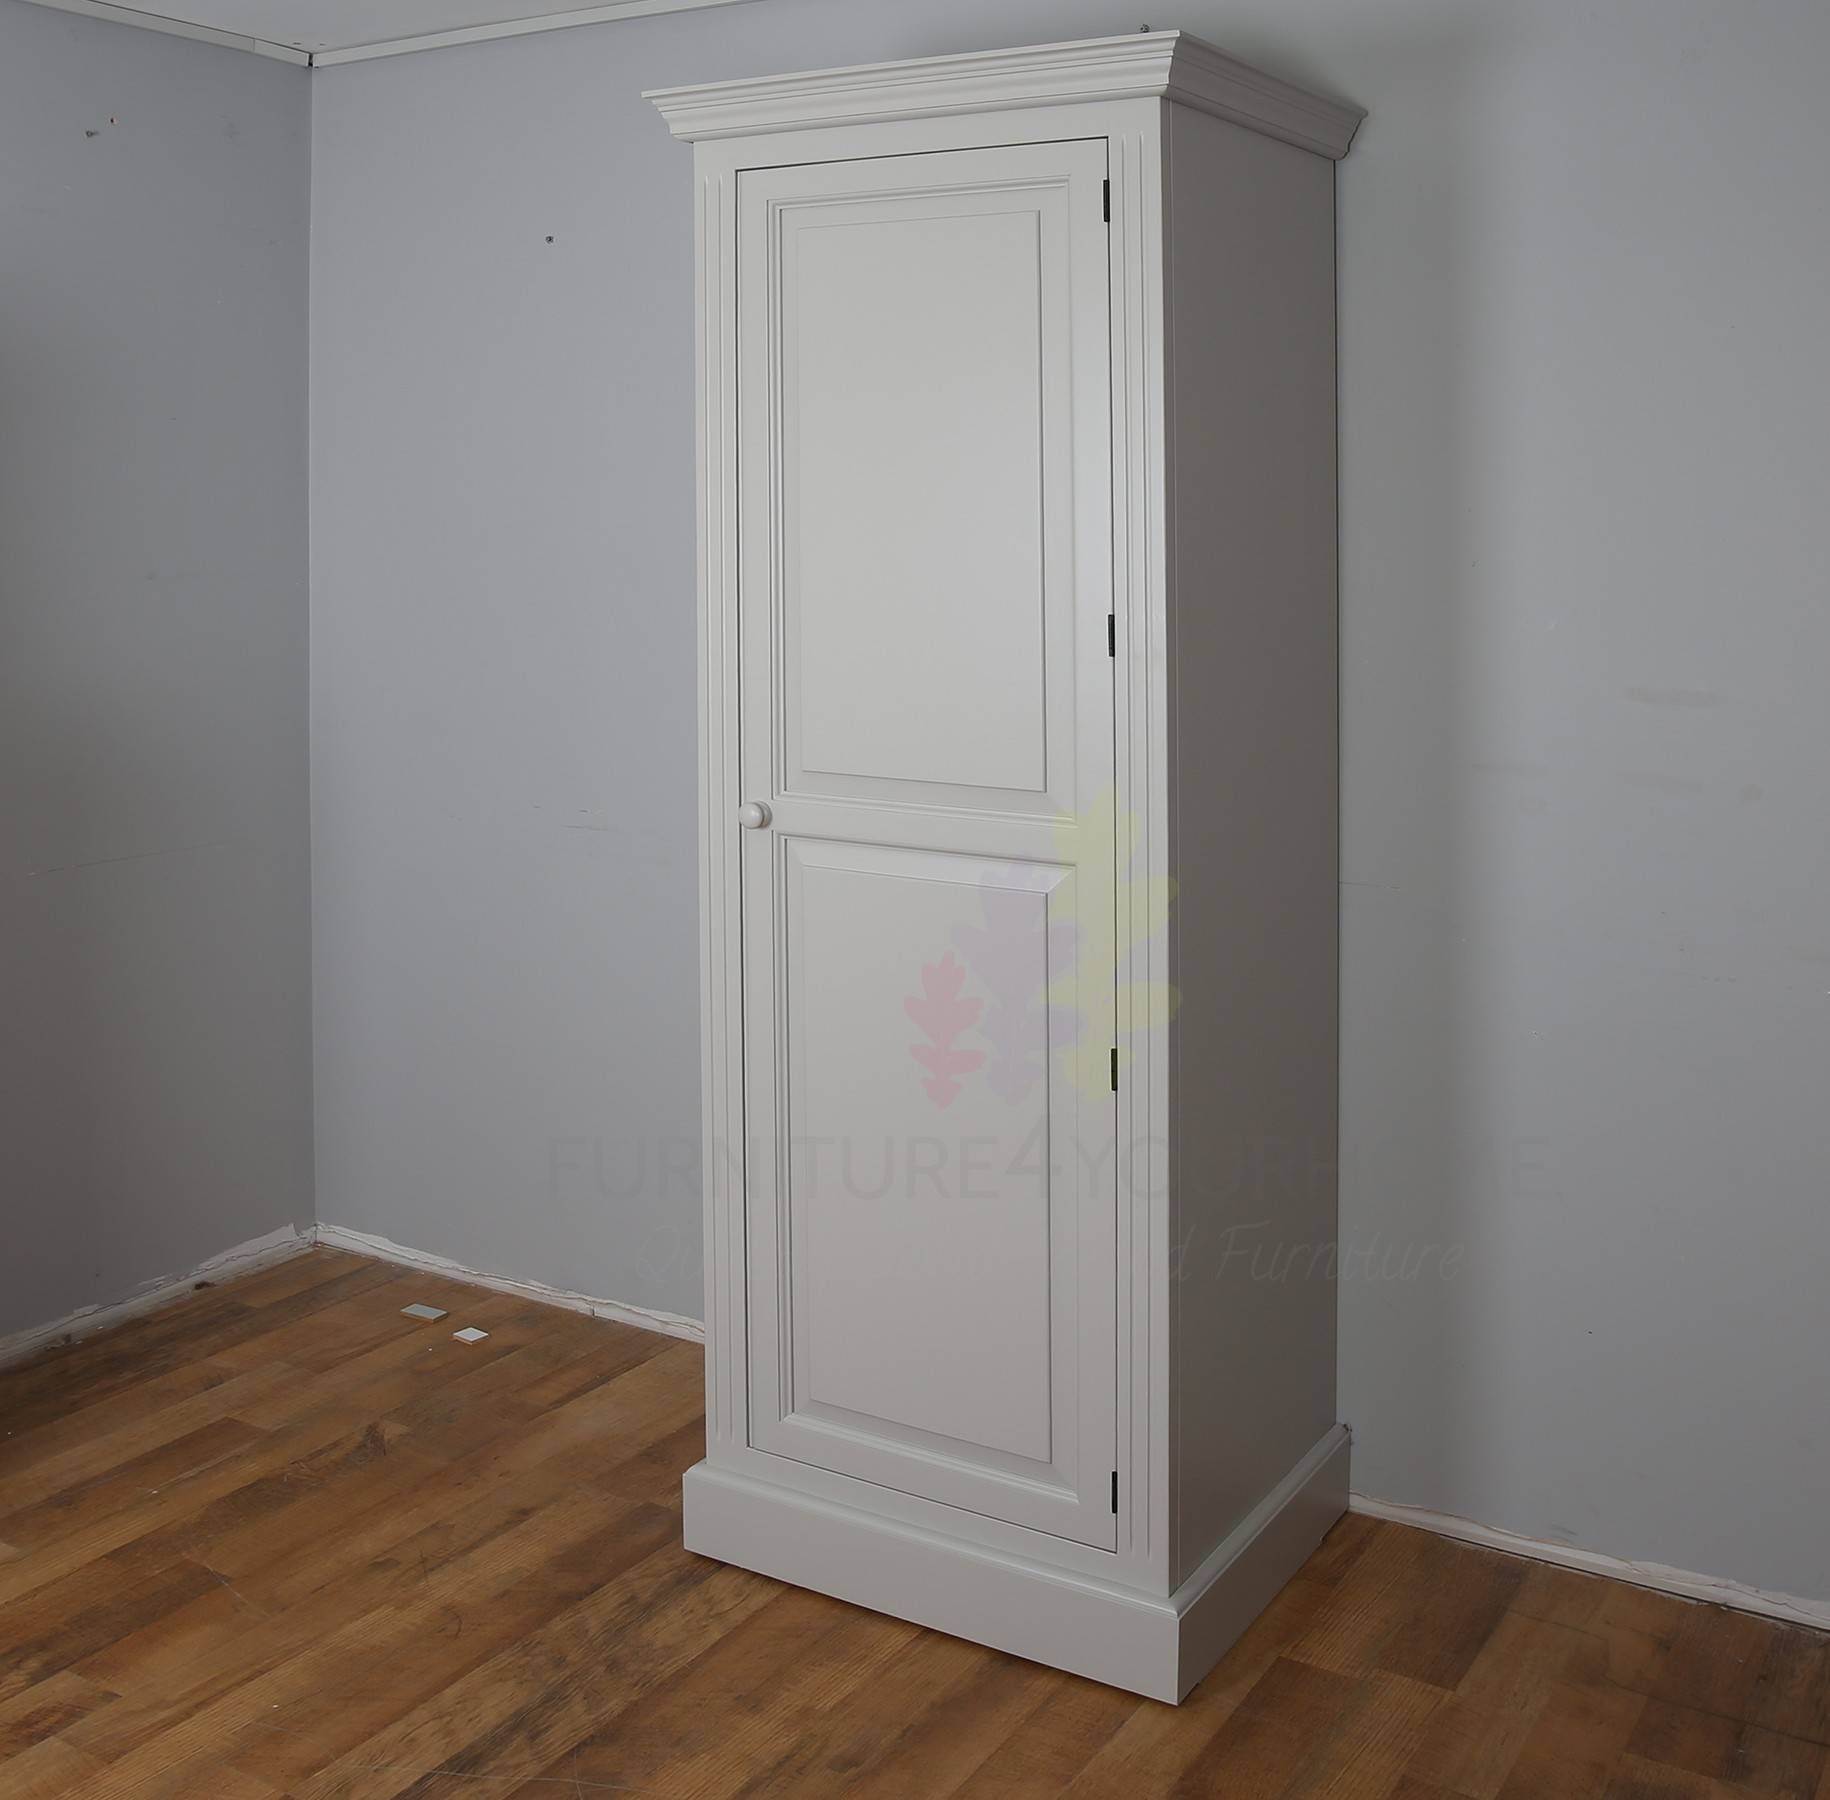 Farrow & Ball Painted 1 Door Full Hanging Wardrobe Regarding Single Door Pine Wardrobes (View 14 of 15)